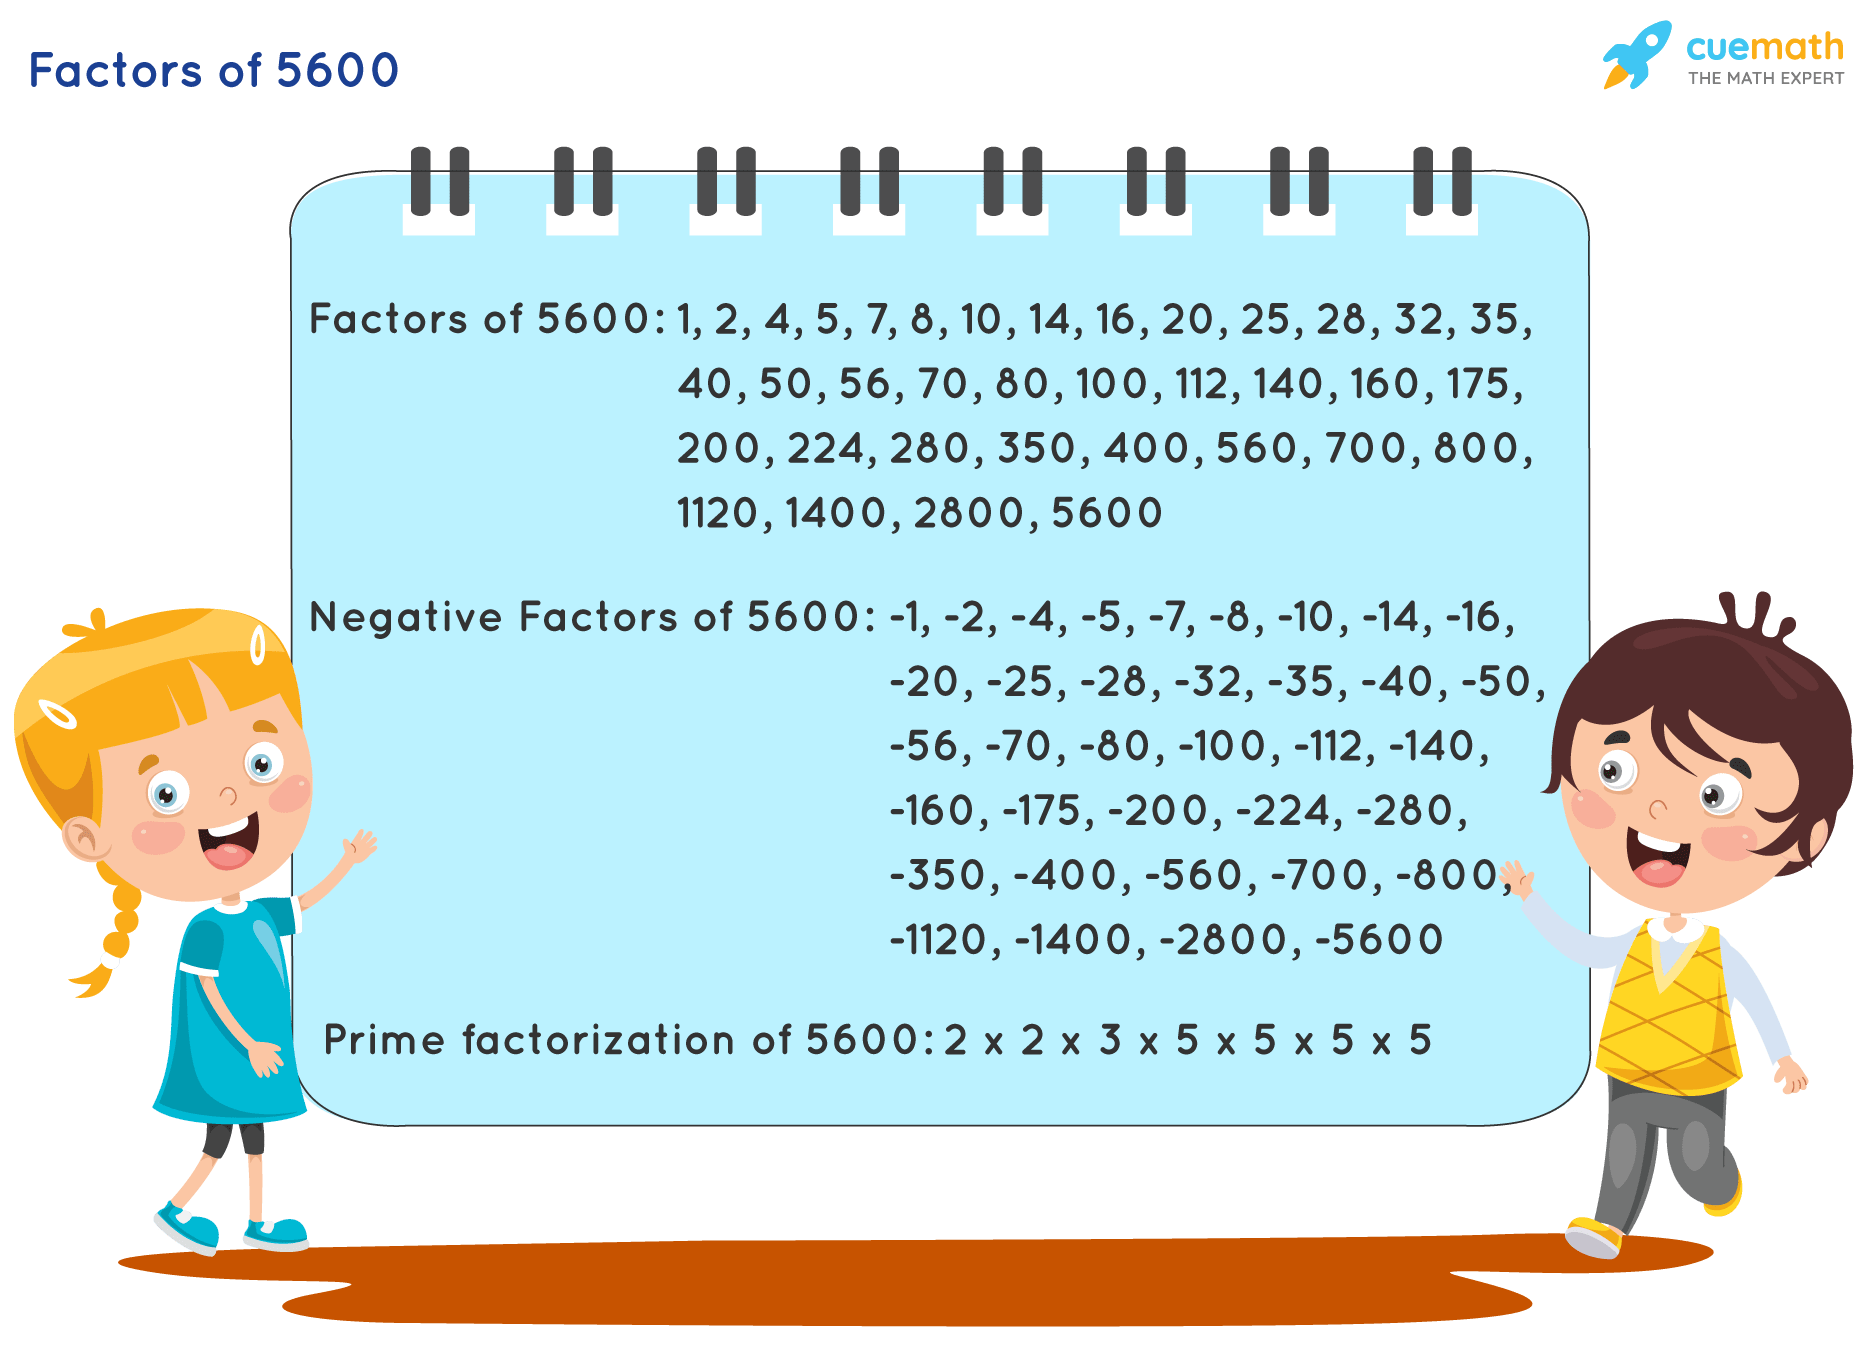 Factors of 5600